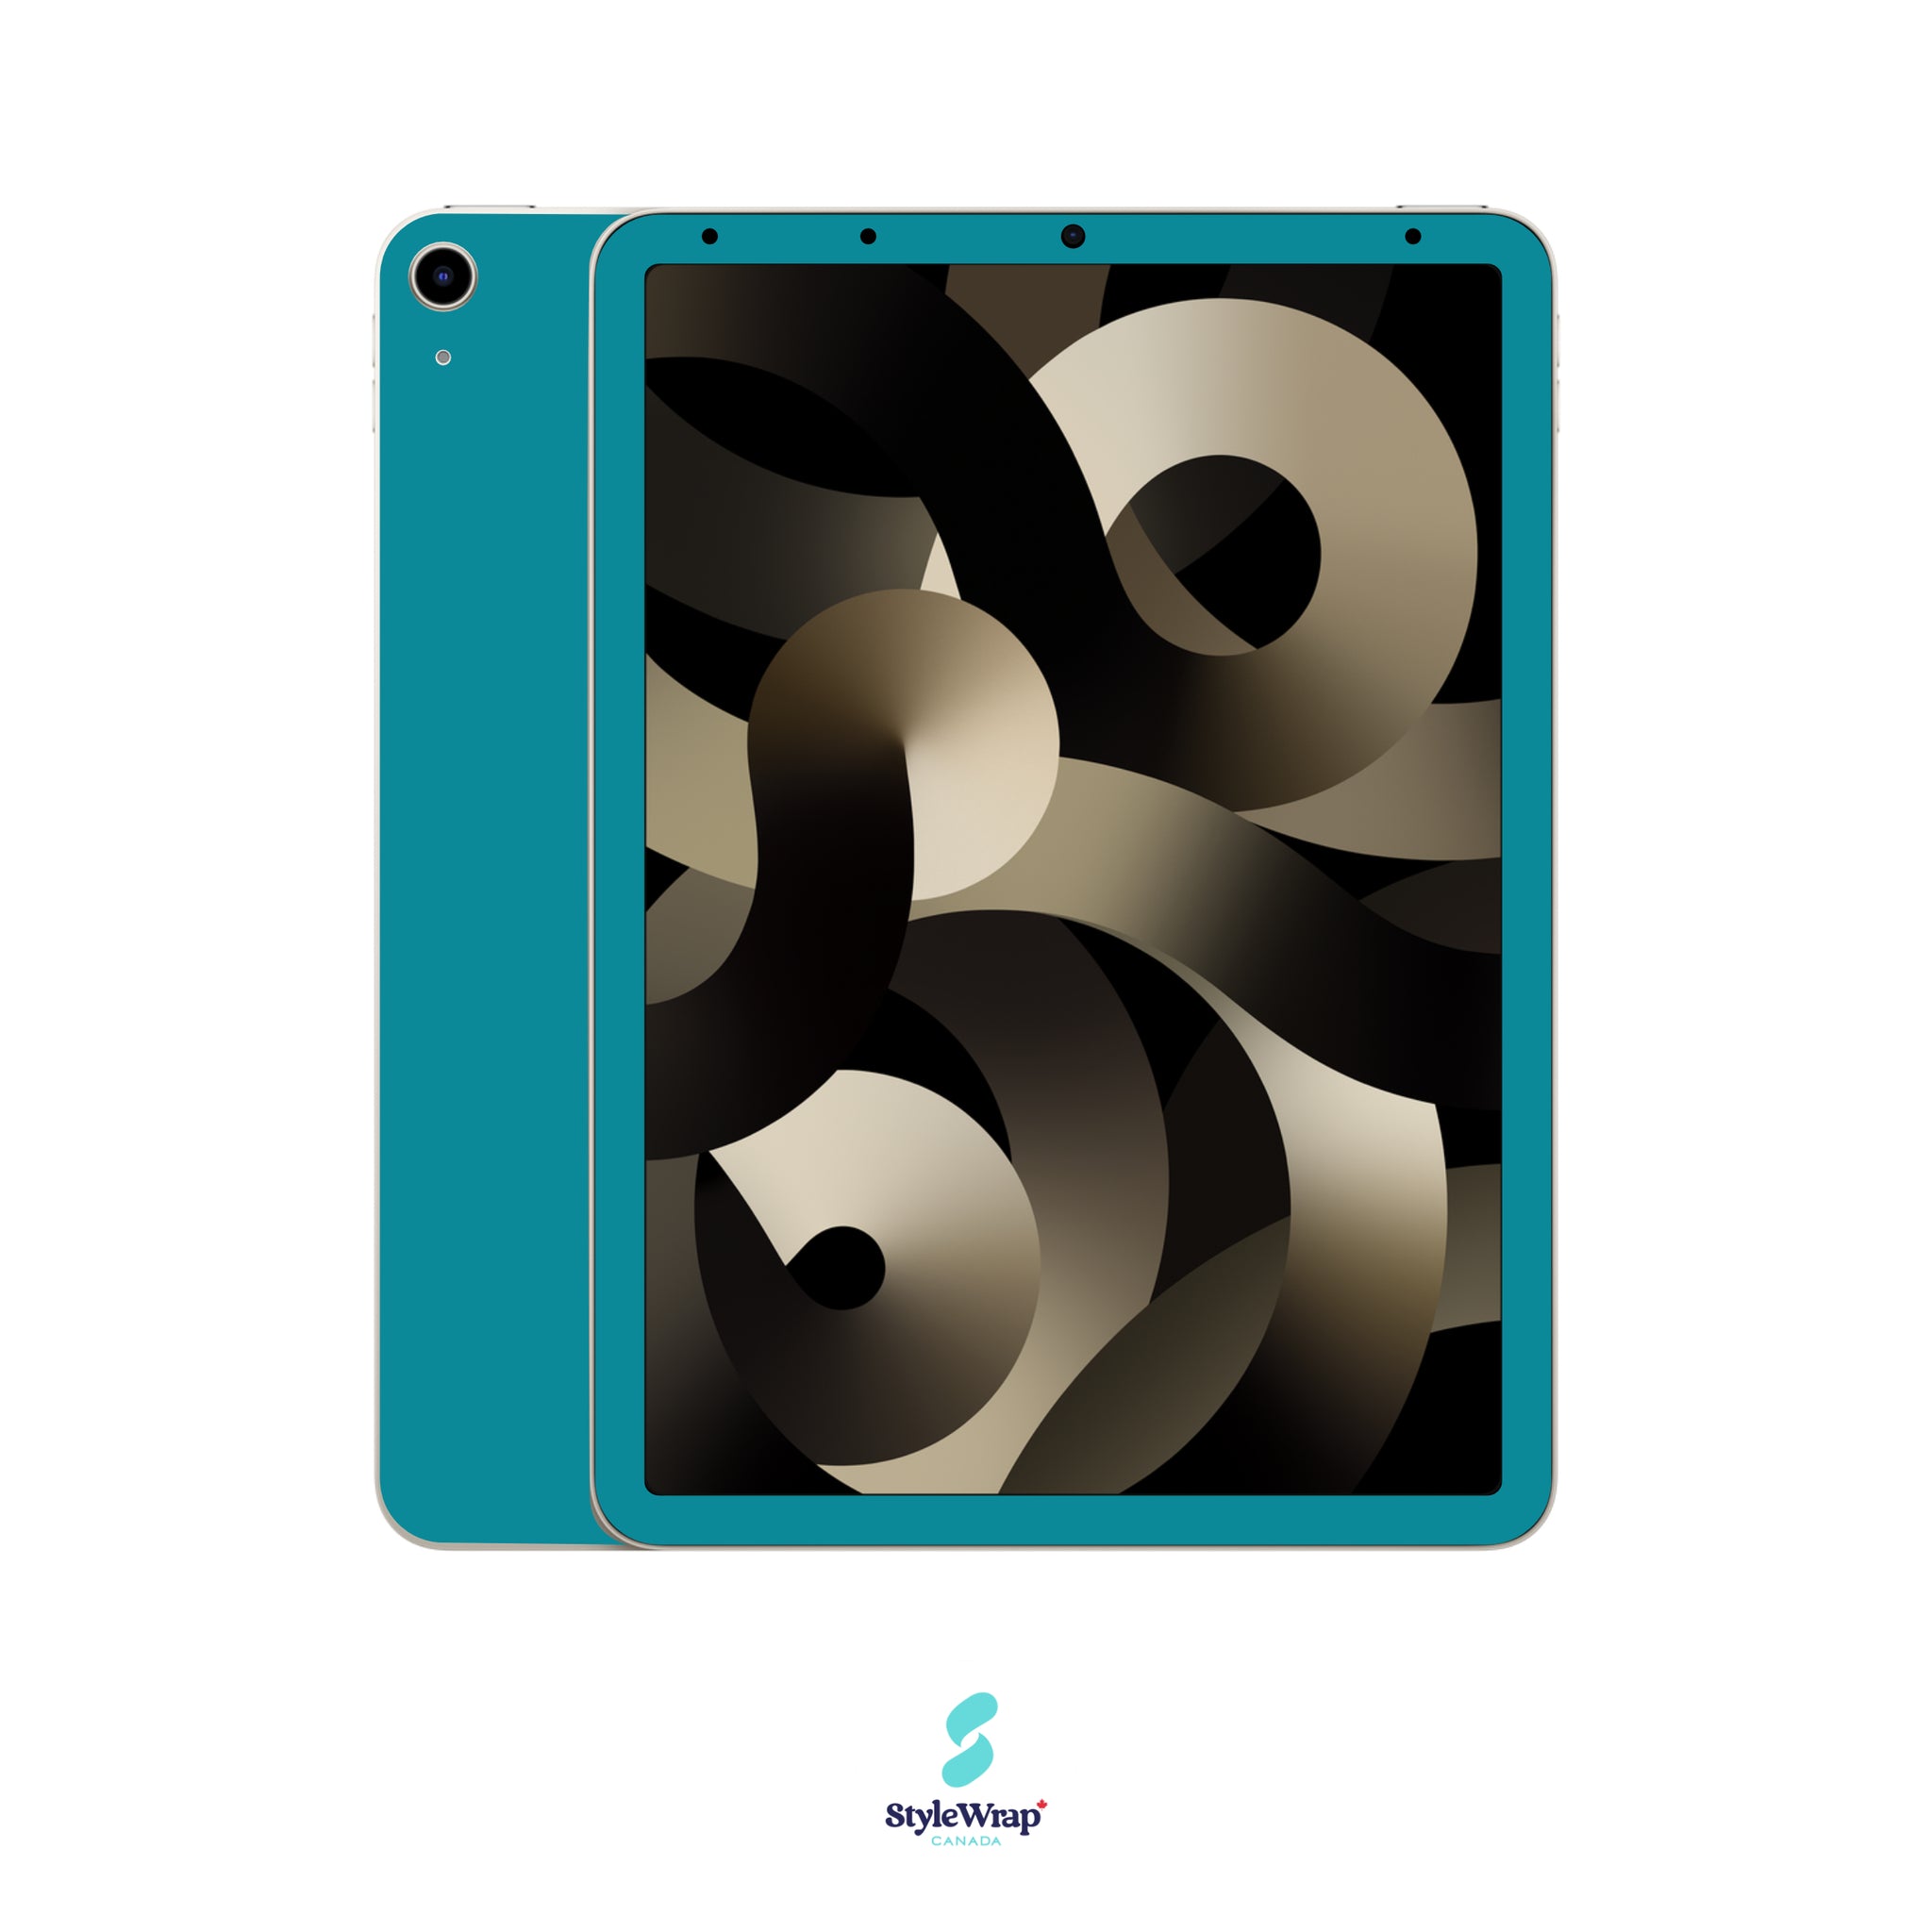 iPad - Teal